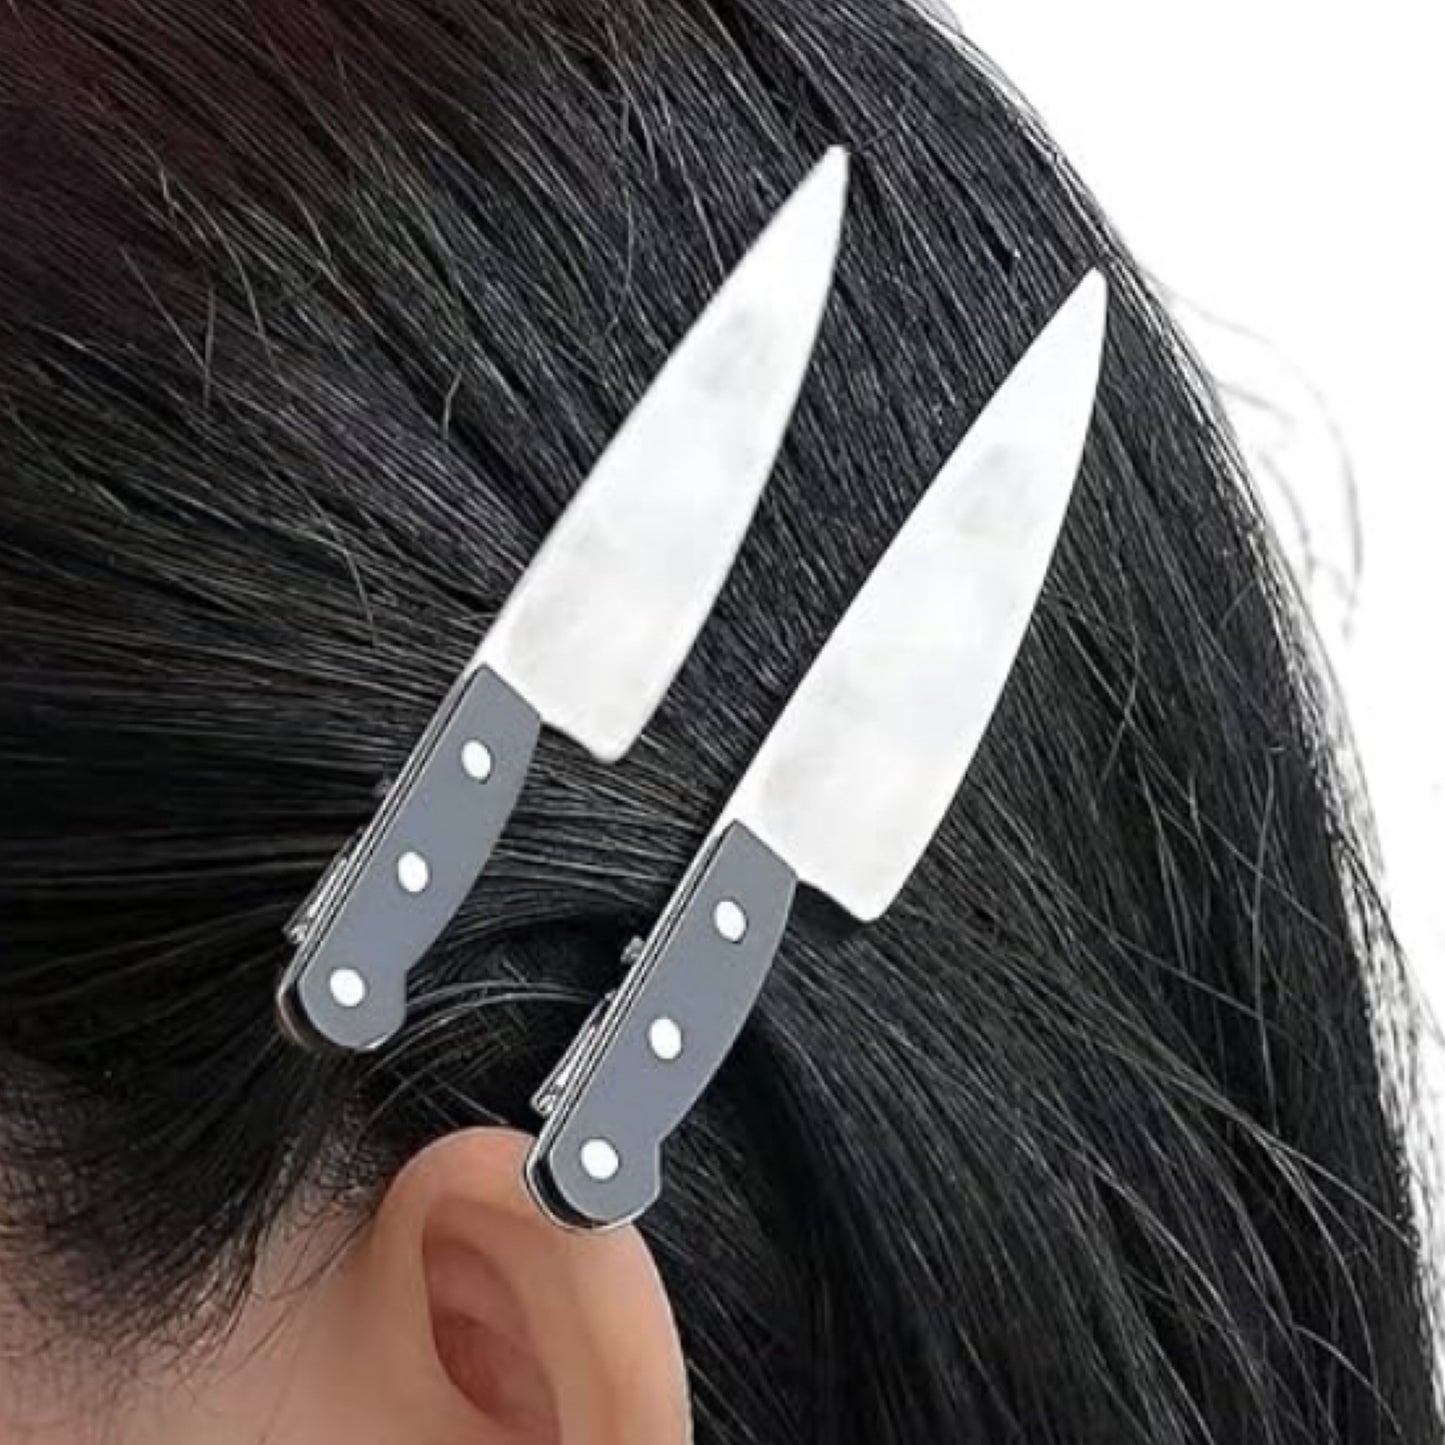 Knife hair clips